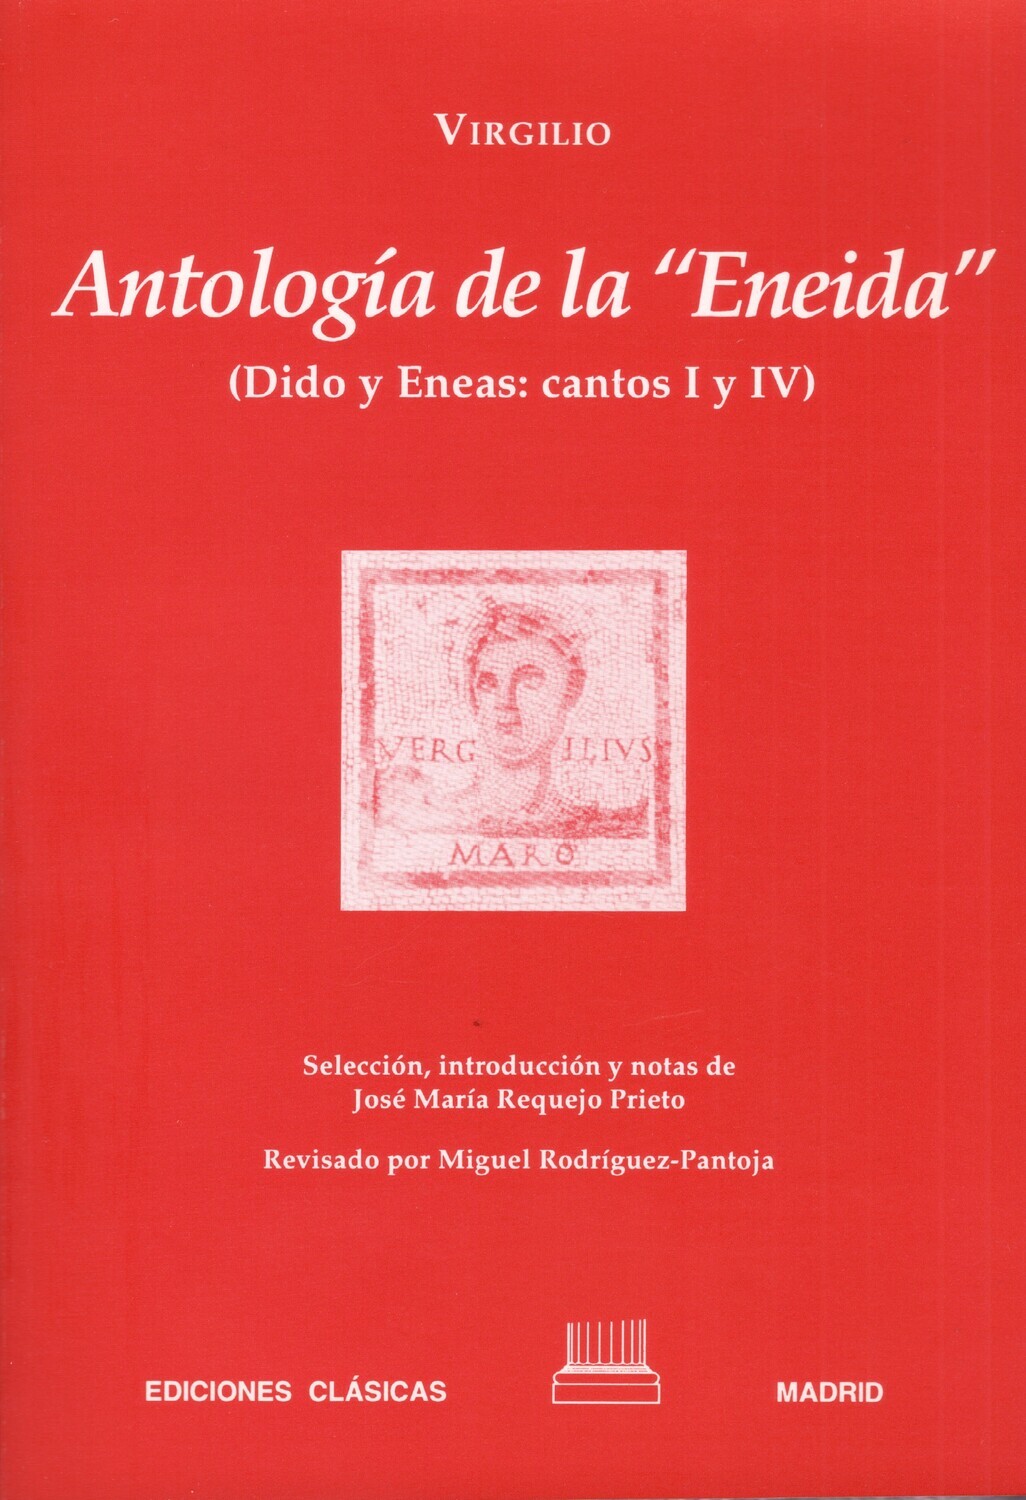 VIRGILIO, ANTOLOGÍA DE LA ENEIDA (DIDO Y ENEAS: CANTOS I y IV)